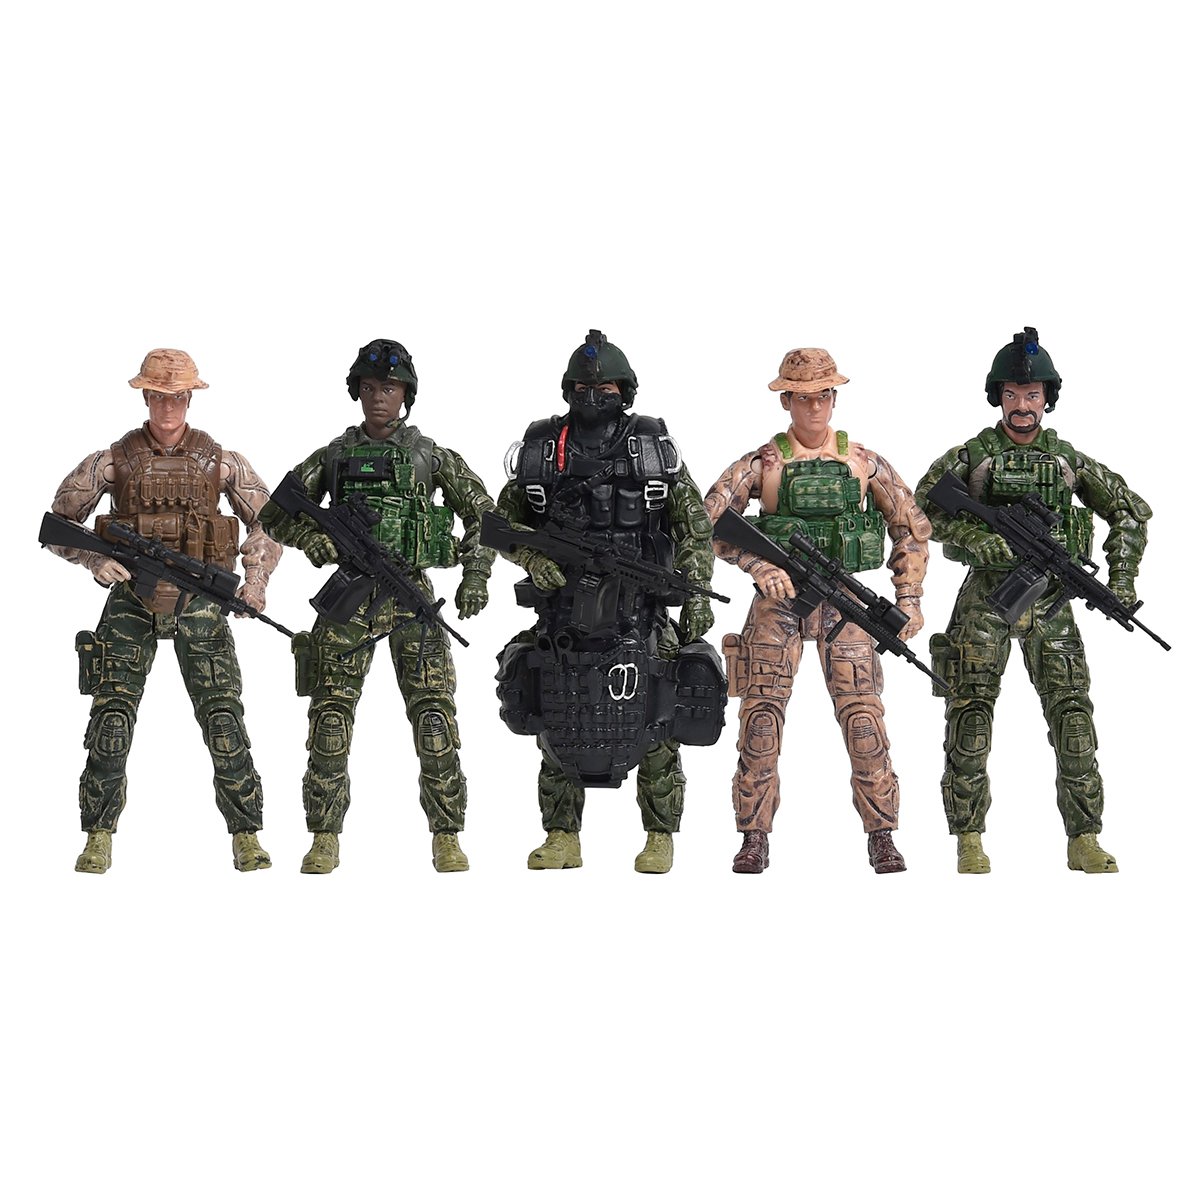 Игровой набор фигурок солдатов Elite Force Морские котики, 5 фигурок (101837) - фото 2